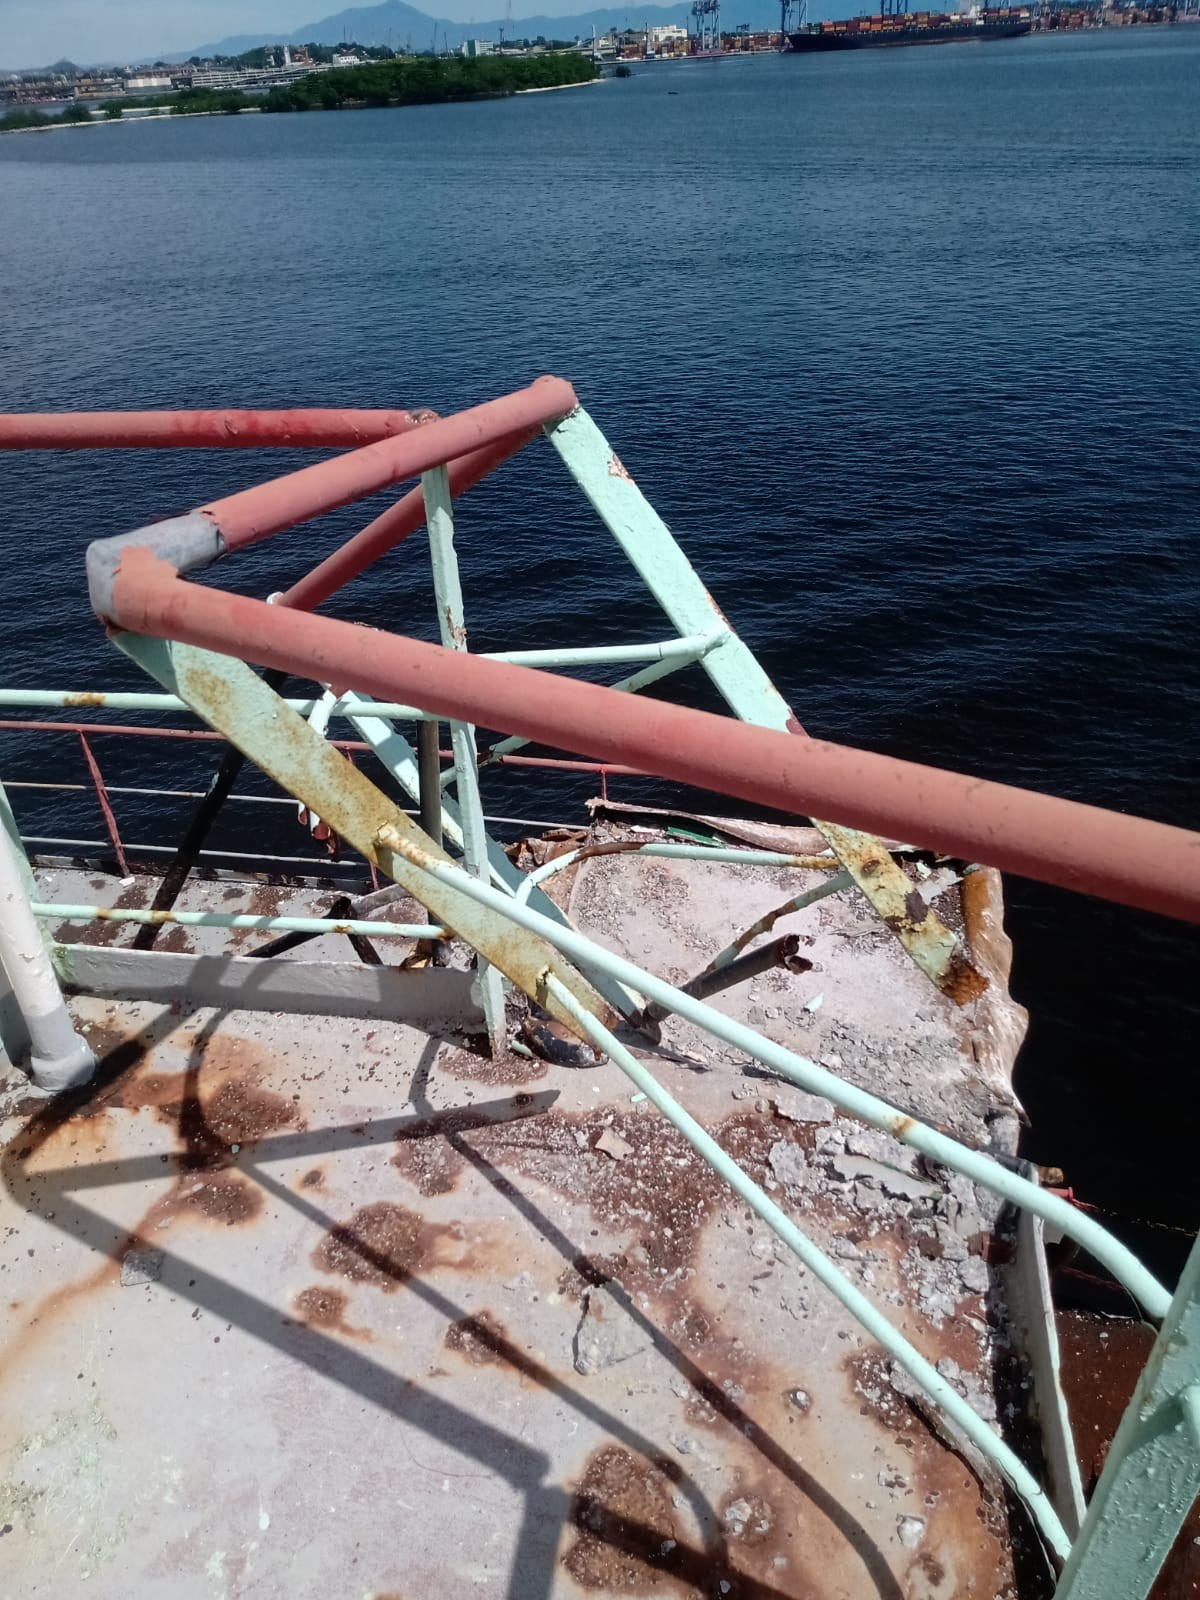 Avarias sofridas pelo navio São Luiz, que colidiu com a Ponte Rio-Niterói — Foto: Divulgação